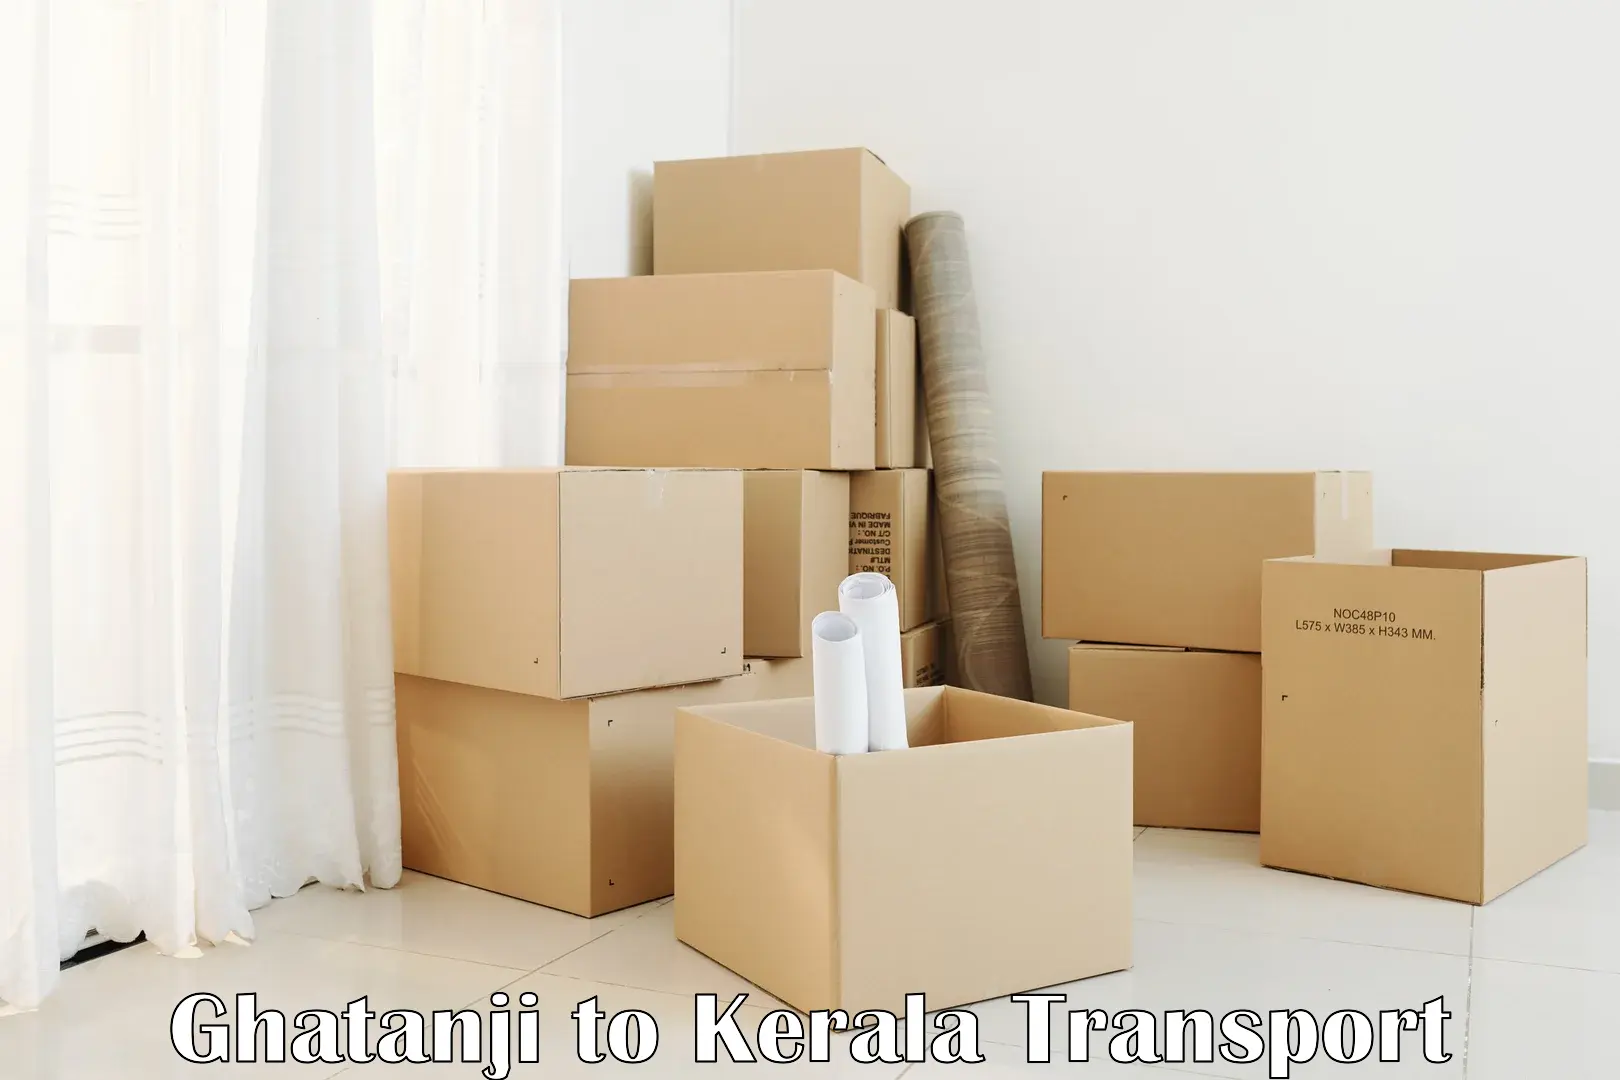 Shipping partner Ghatanji to Kerala